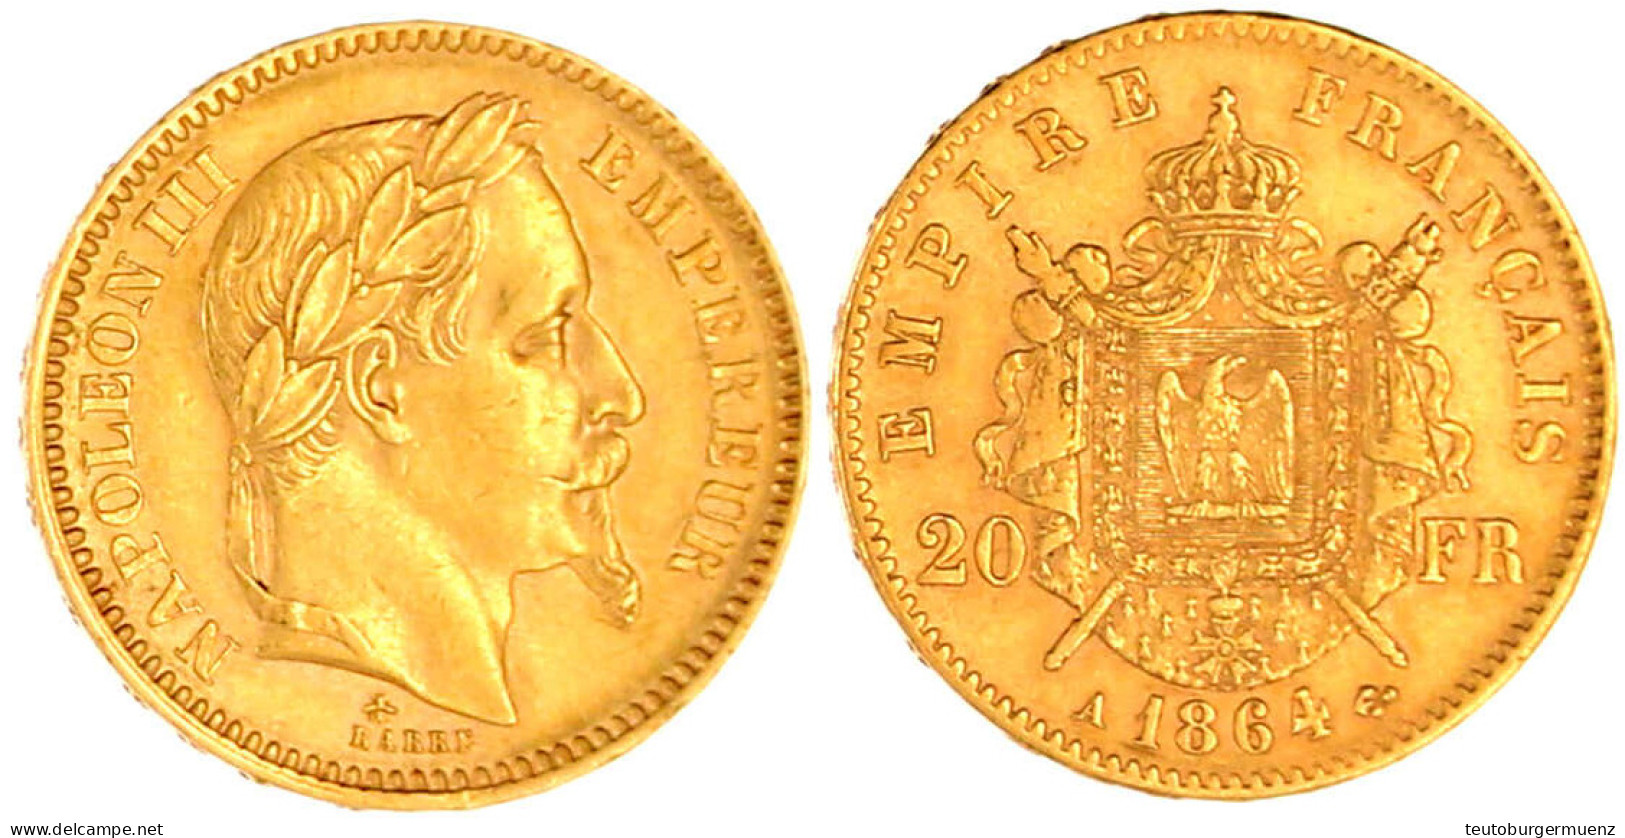 20 Francs 1864 A, Paris. 6,45 G. 900/1000. Vorzüglich. Krause/Mishler 781.1. Friedberg 573. - 20 Francs (gold)